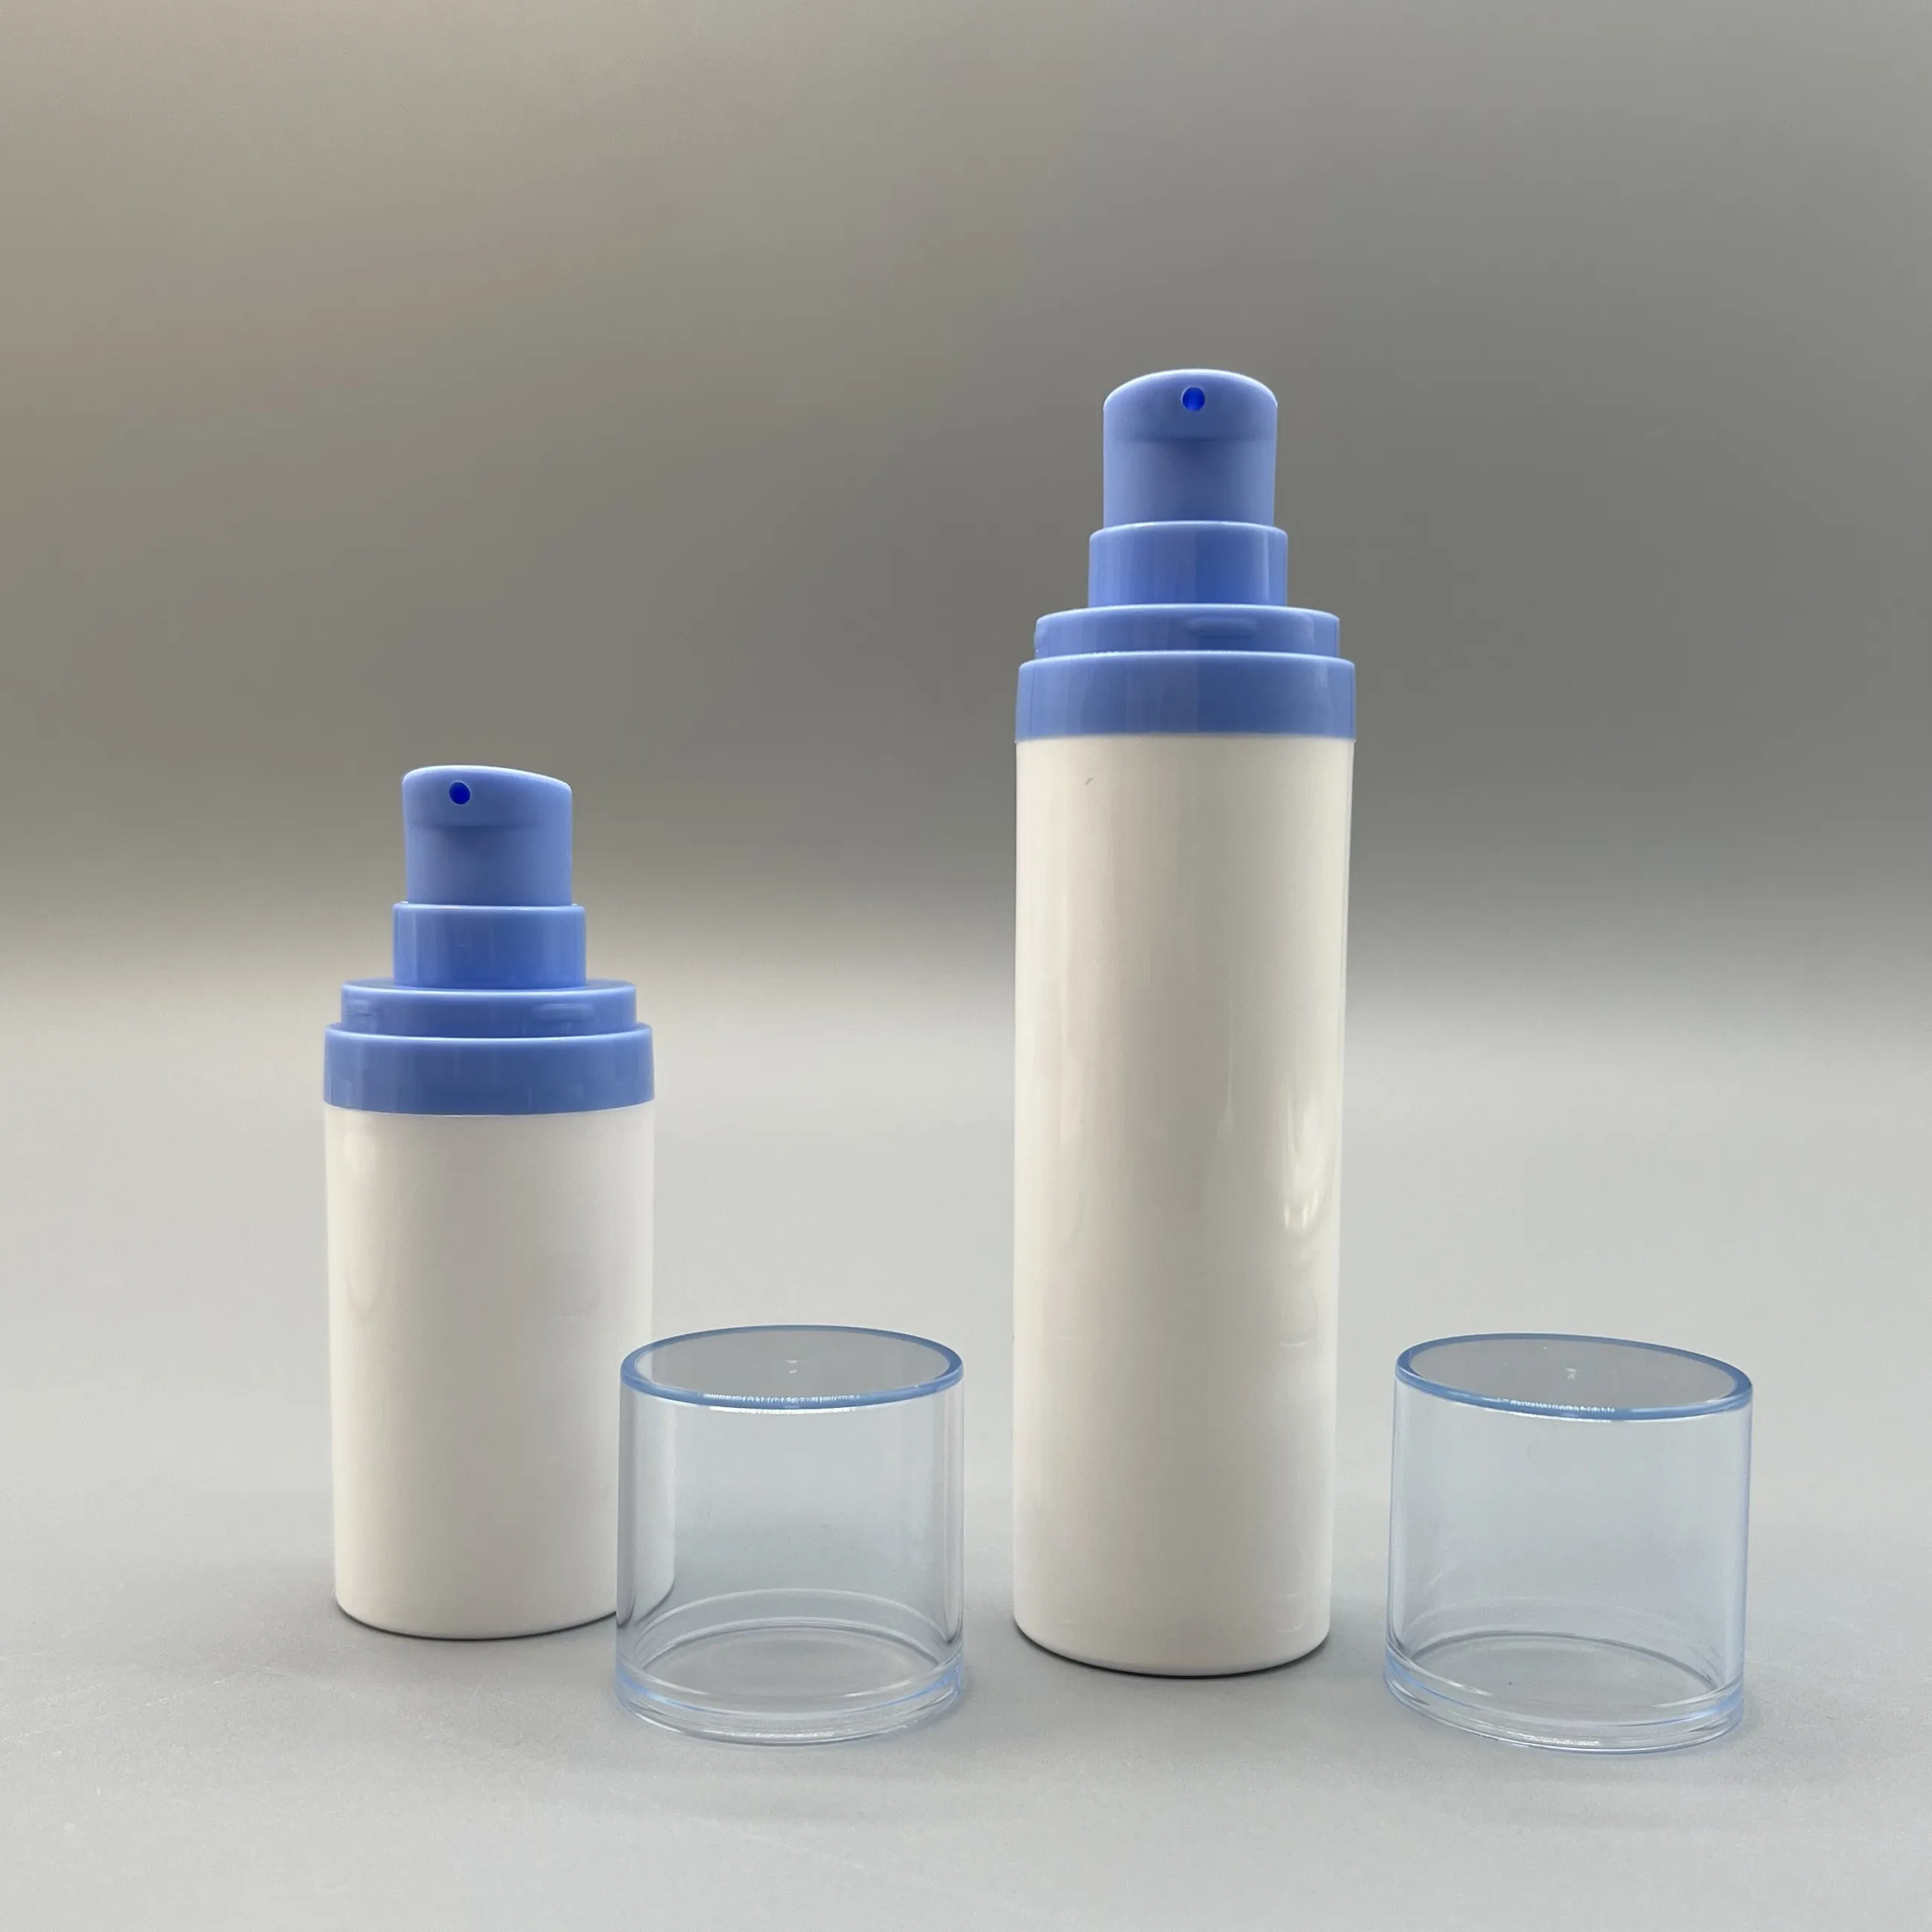 कस्टम लोगो 15 मिली 30 मिली 50 मिली मैट ब्लैक खाली वायुहीन प्लास्टिक इमल्शन परफ्यूम स्प्रे लोशन की बोतलें पंप के साथ सीरम की बोतल